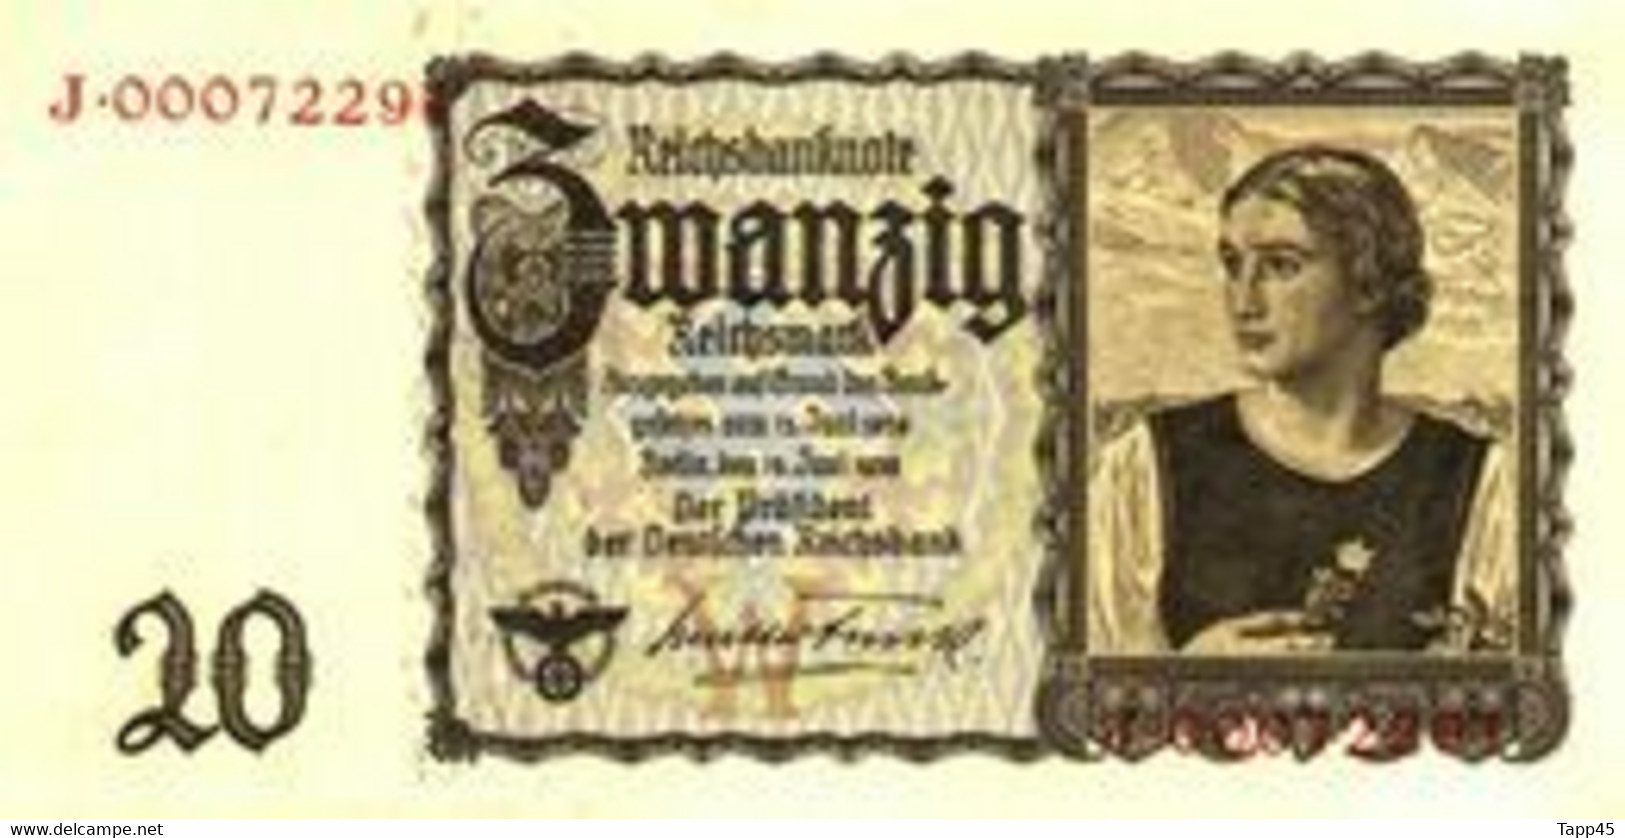 2 Billets > Allemagne  > 15 Juin 1939   20 Reichsmark > Comme Neuf / SUP  > C 04 > - 20 Reichsmark